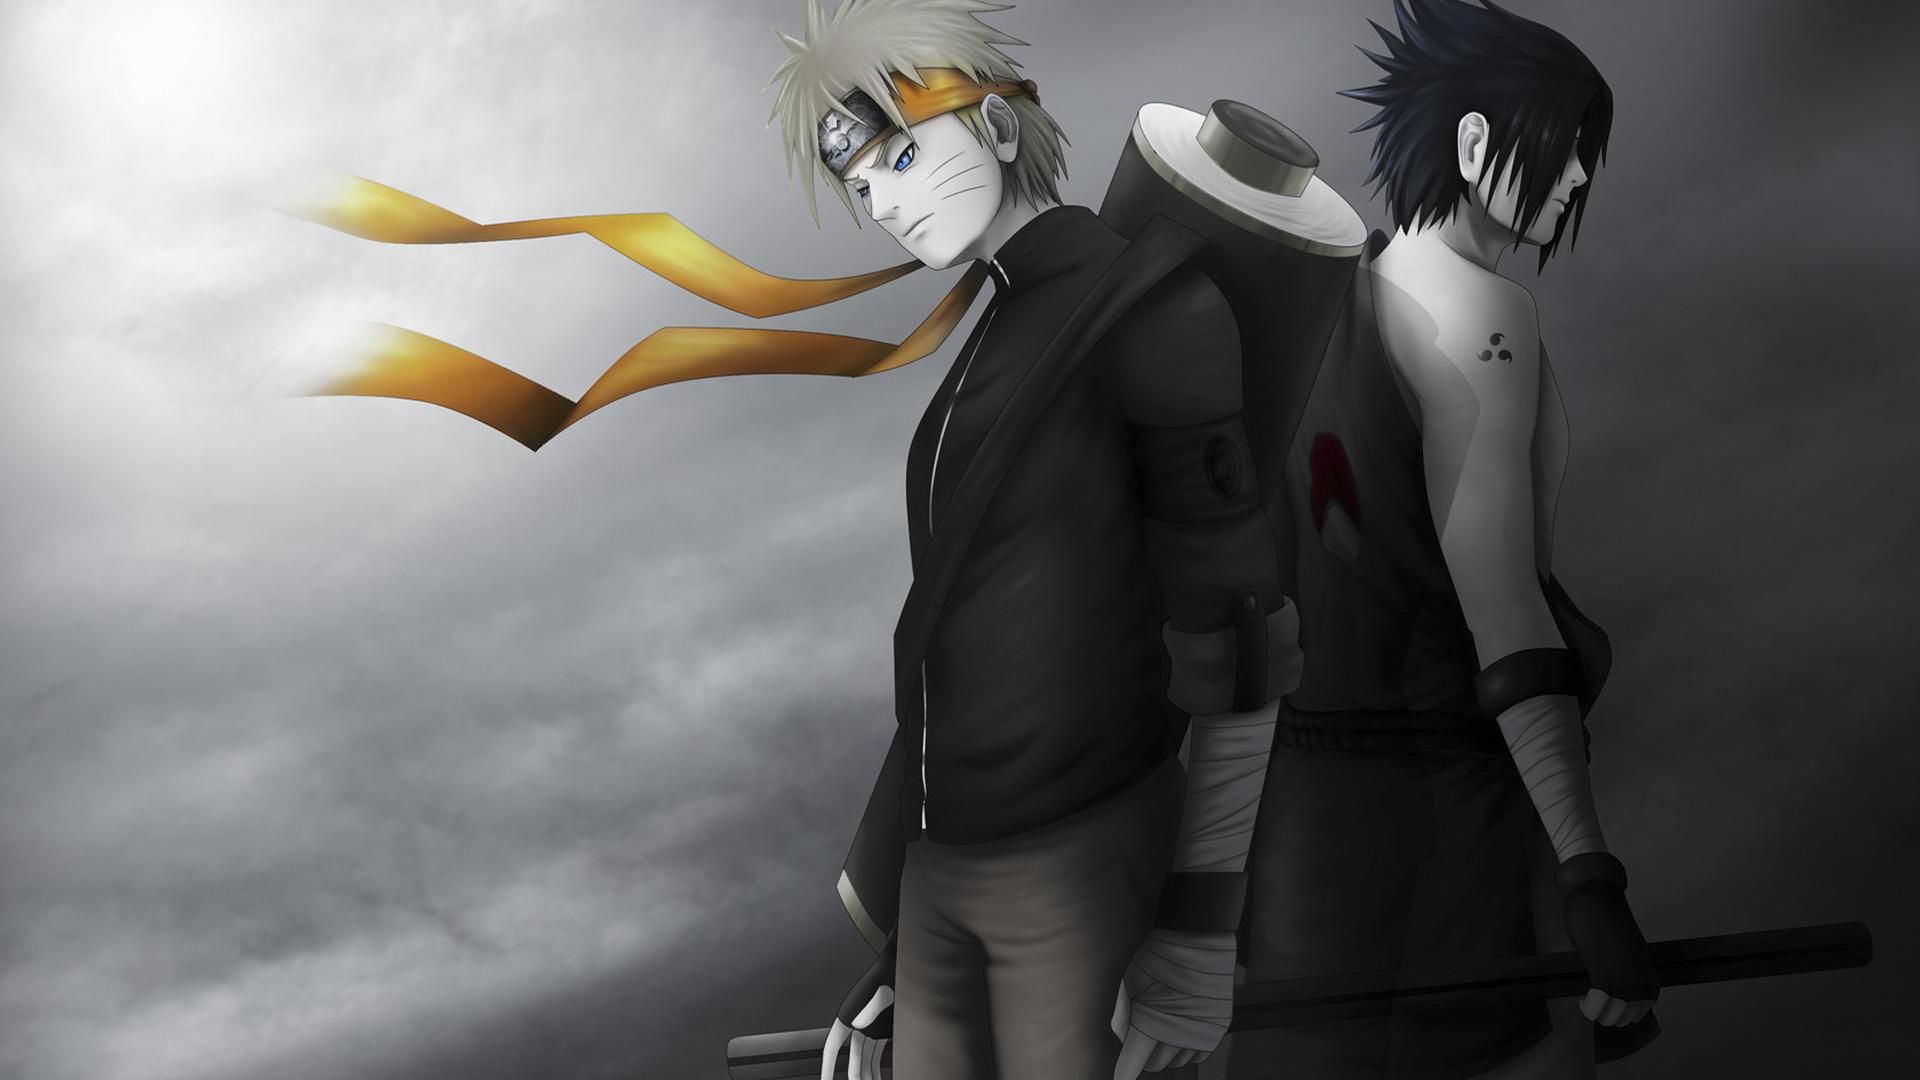 Free download Naruto Sasuke Shippuden Black and White HD Wallpaper